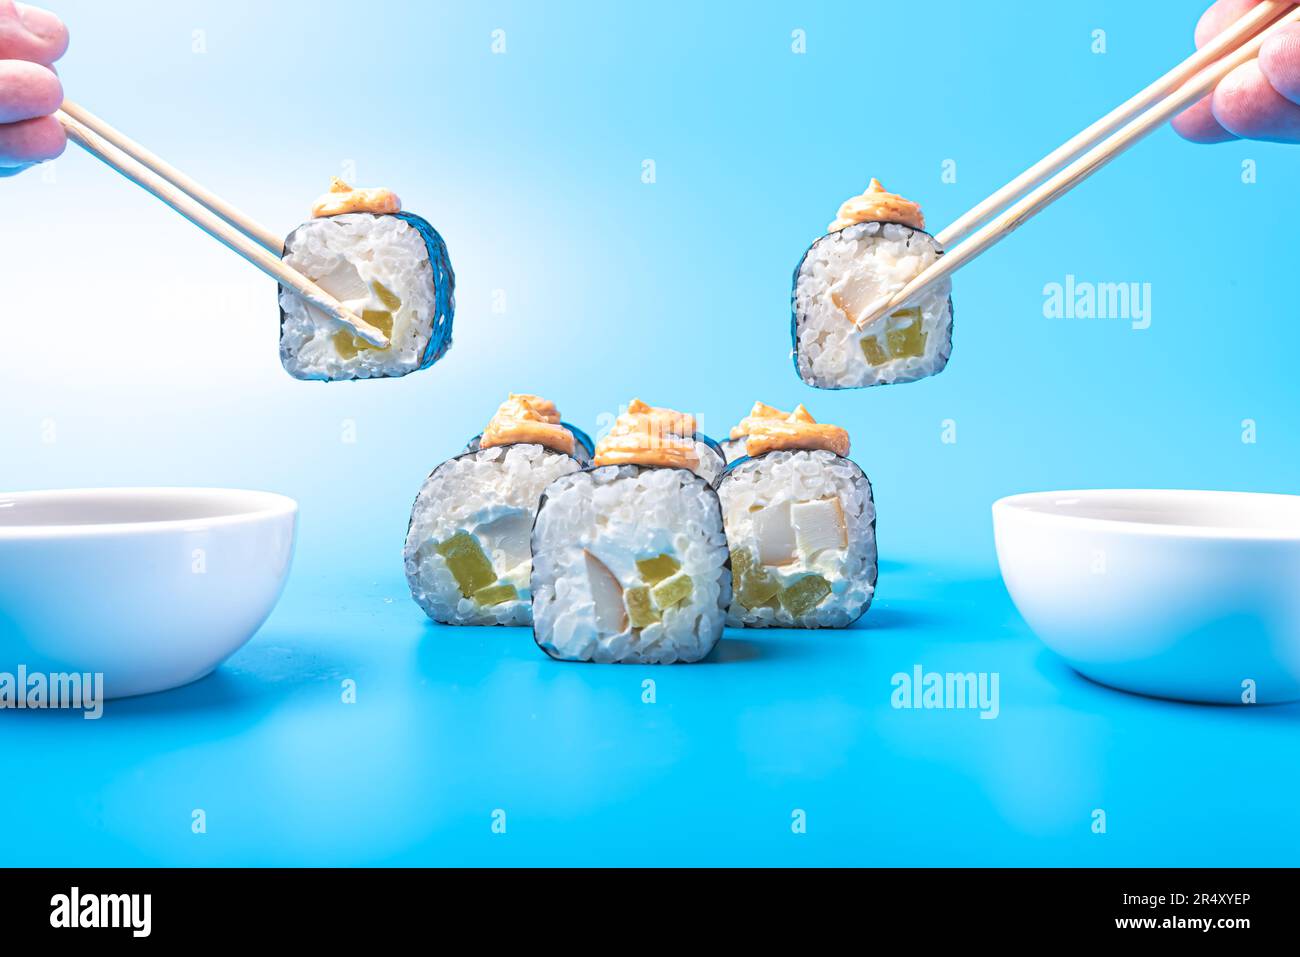 Morceaux de sushi roulés, avec fromage, daikon, poisson et sauce épicée, trempés dans de la sauce soja, sur fond bleu. Photo de haute qualité Banque D'Images